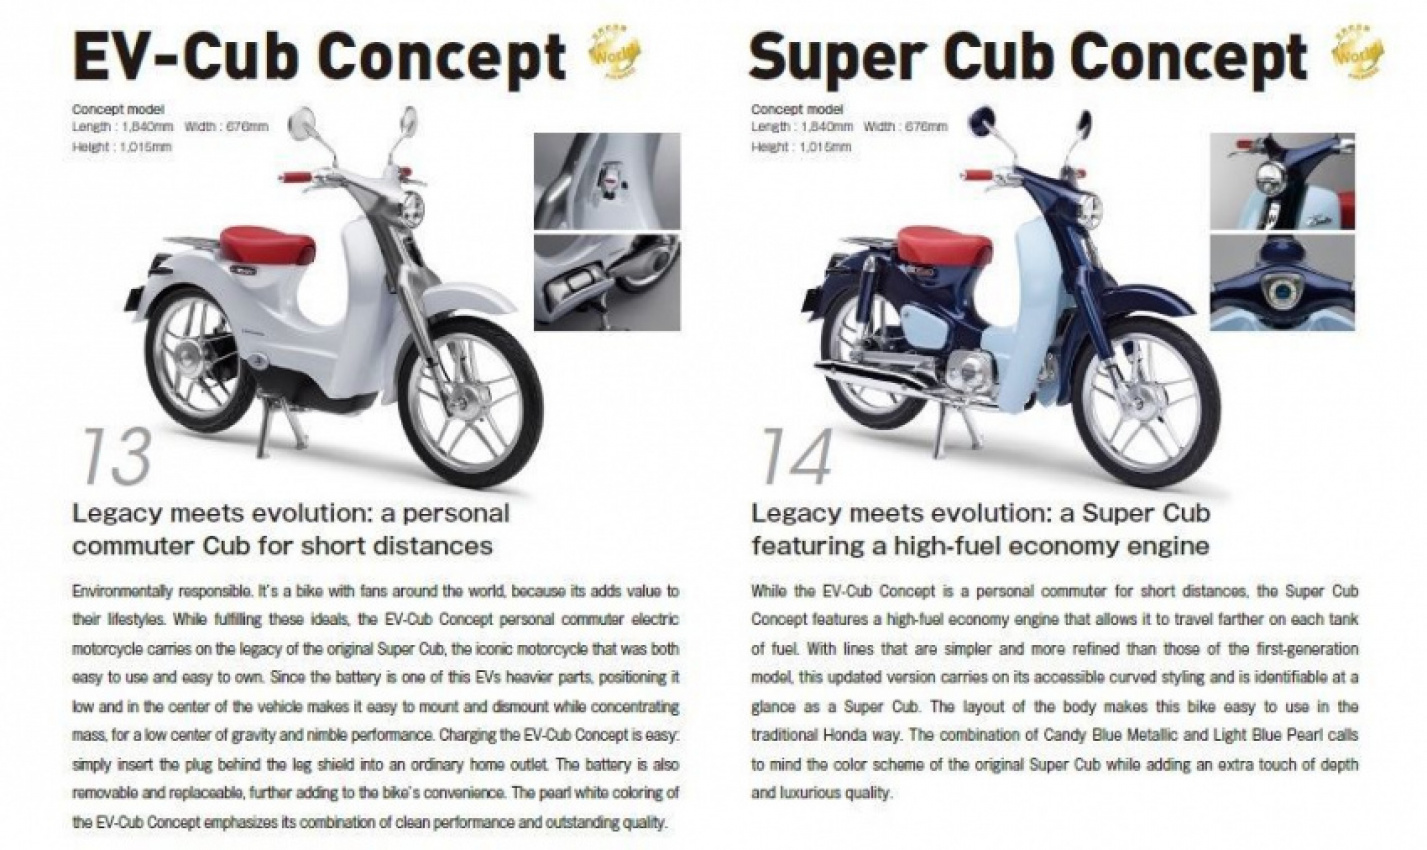 autos, cars, honda, auto news, ev-cub concept, motorcycle, super cub concept, tokyo motor show, tokyo 2015: honda reinvents its iconic super cub and unveils the ev-cub concept